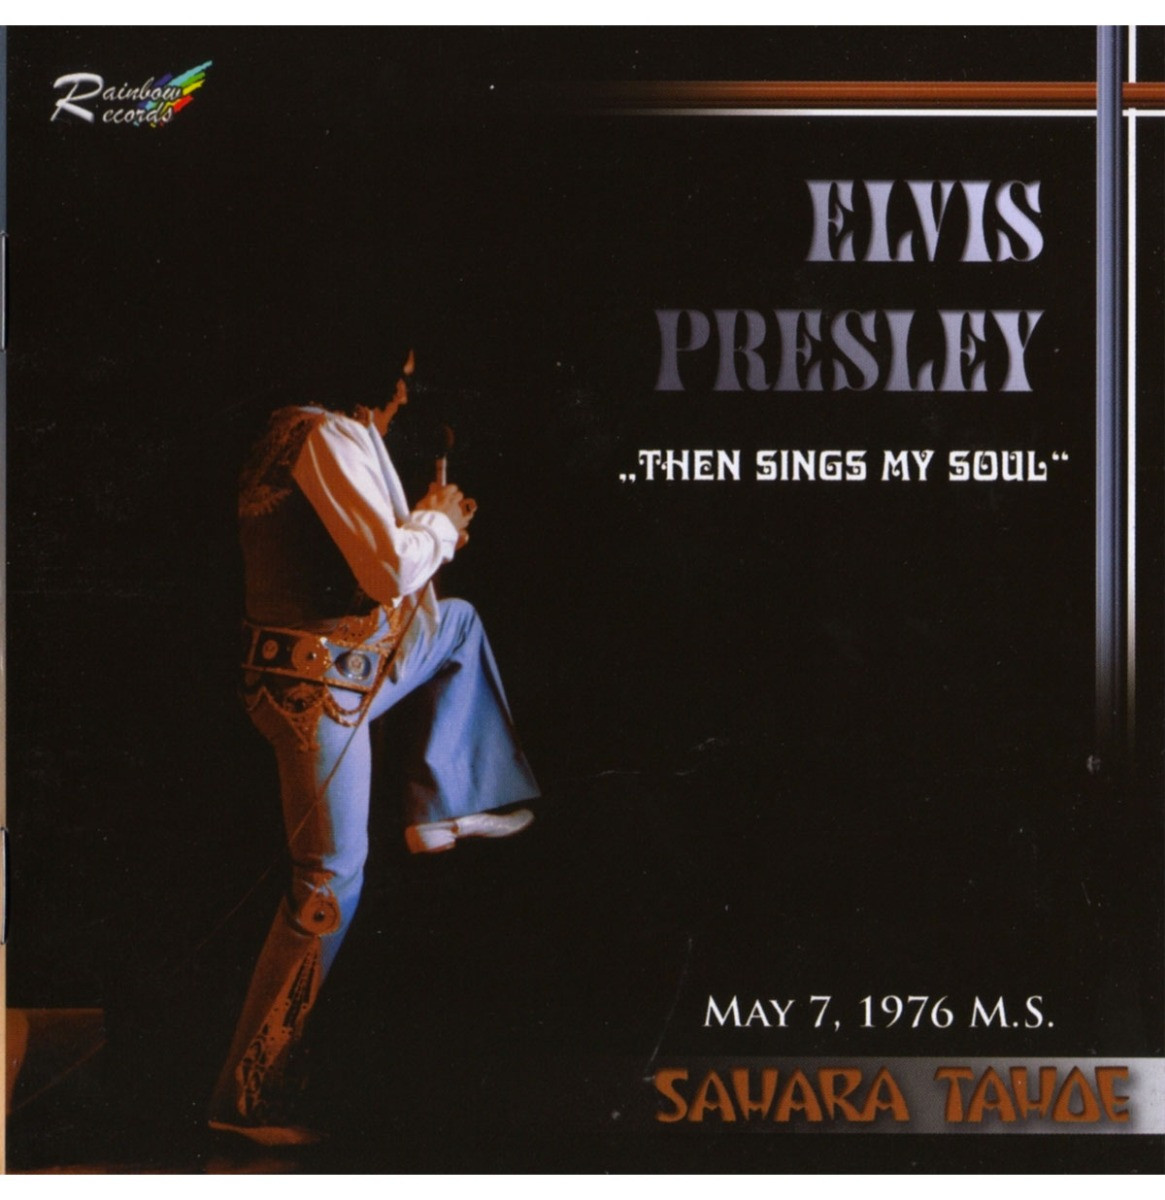 Elvis Presley - Then Sings My Soul 1976 Sahara Tahoe 2-CD